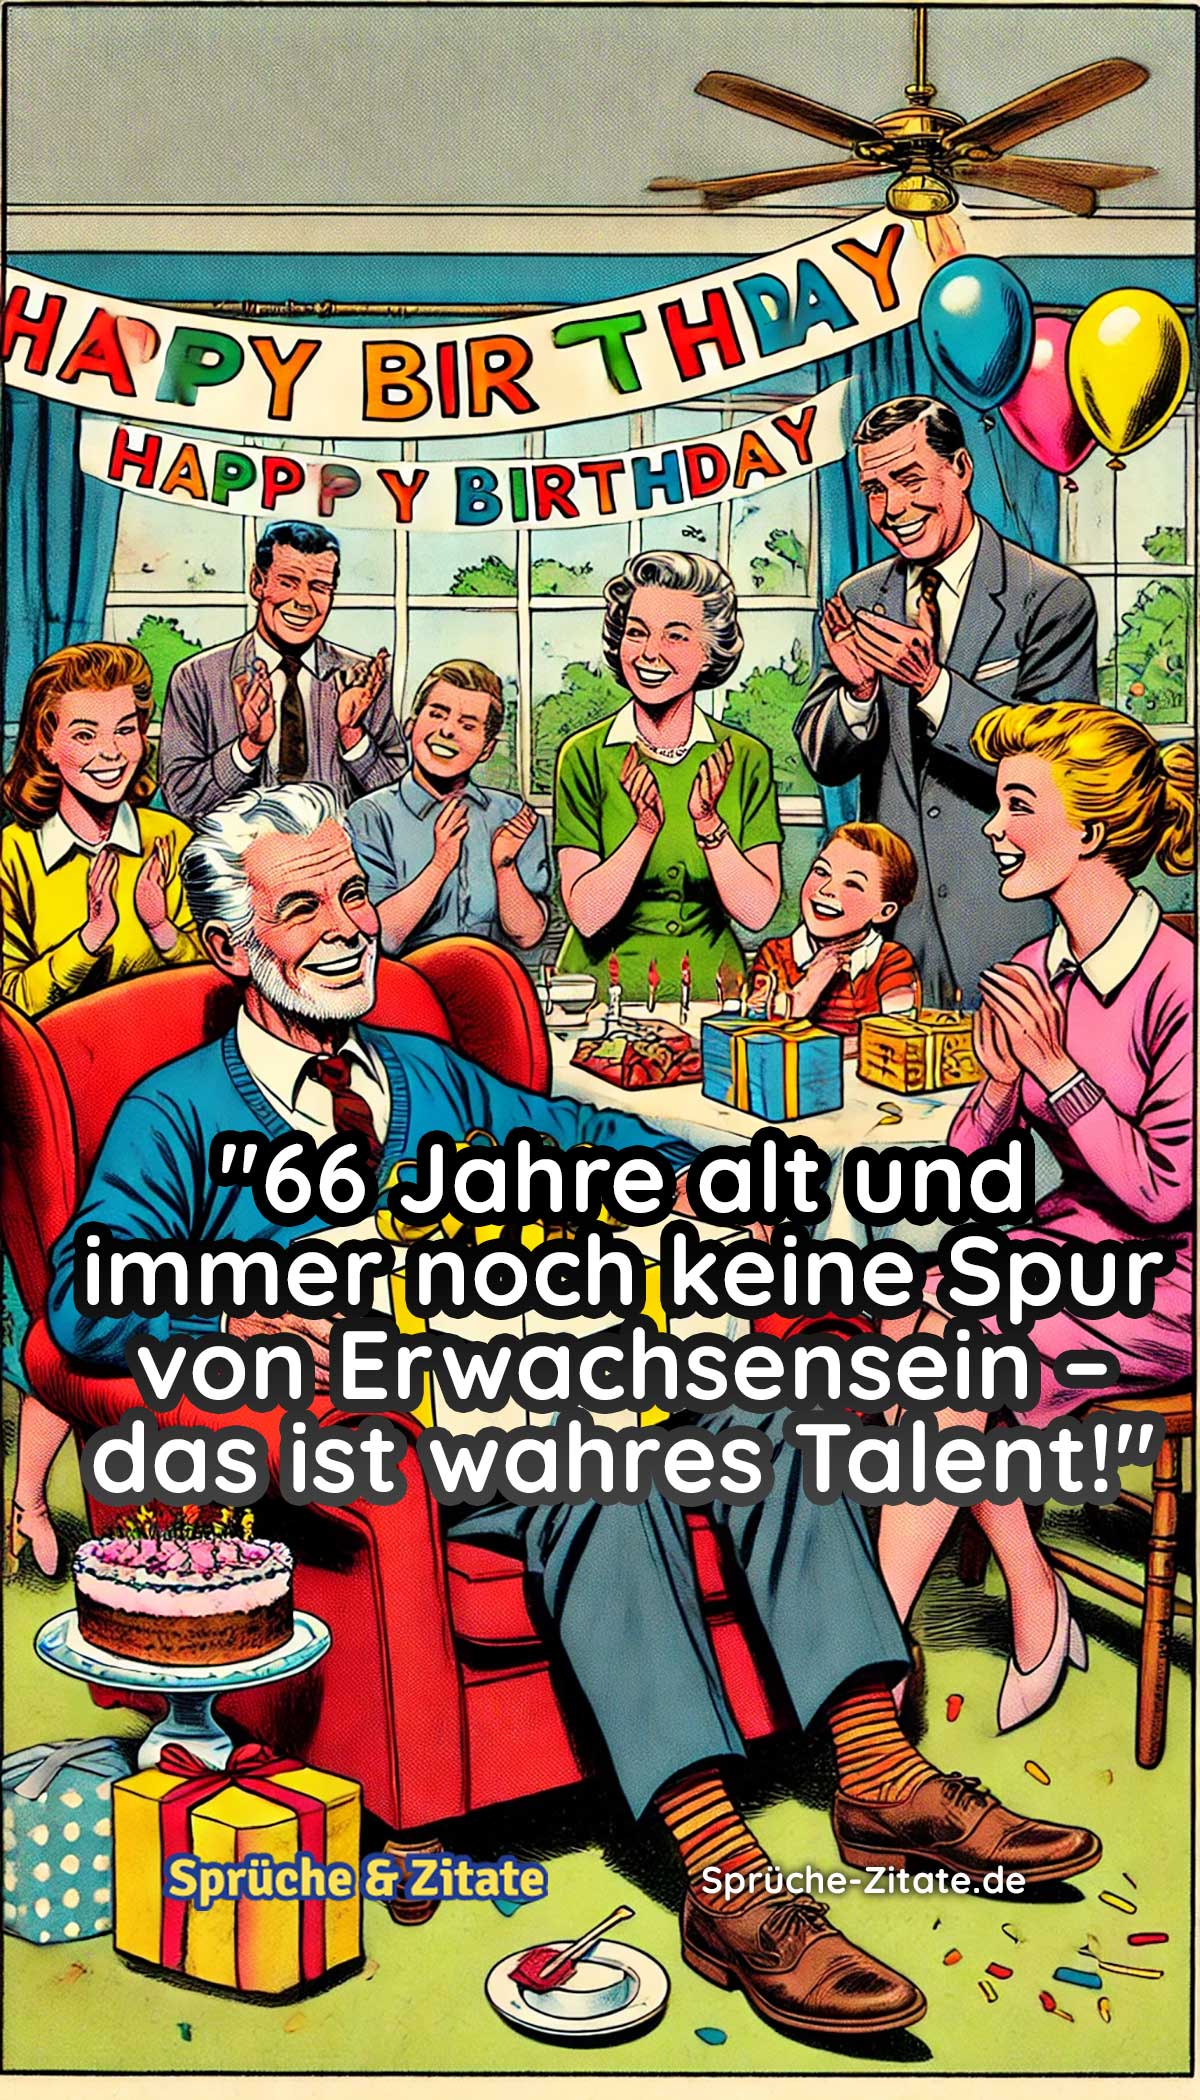 WhatsApp Geburtstagsbilder Kostenlos zum 66. Geburtstag 5